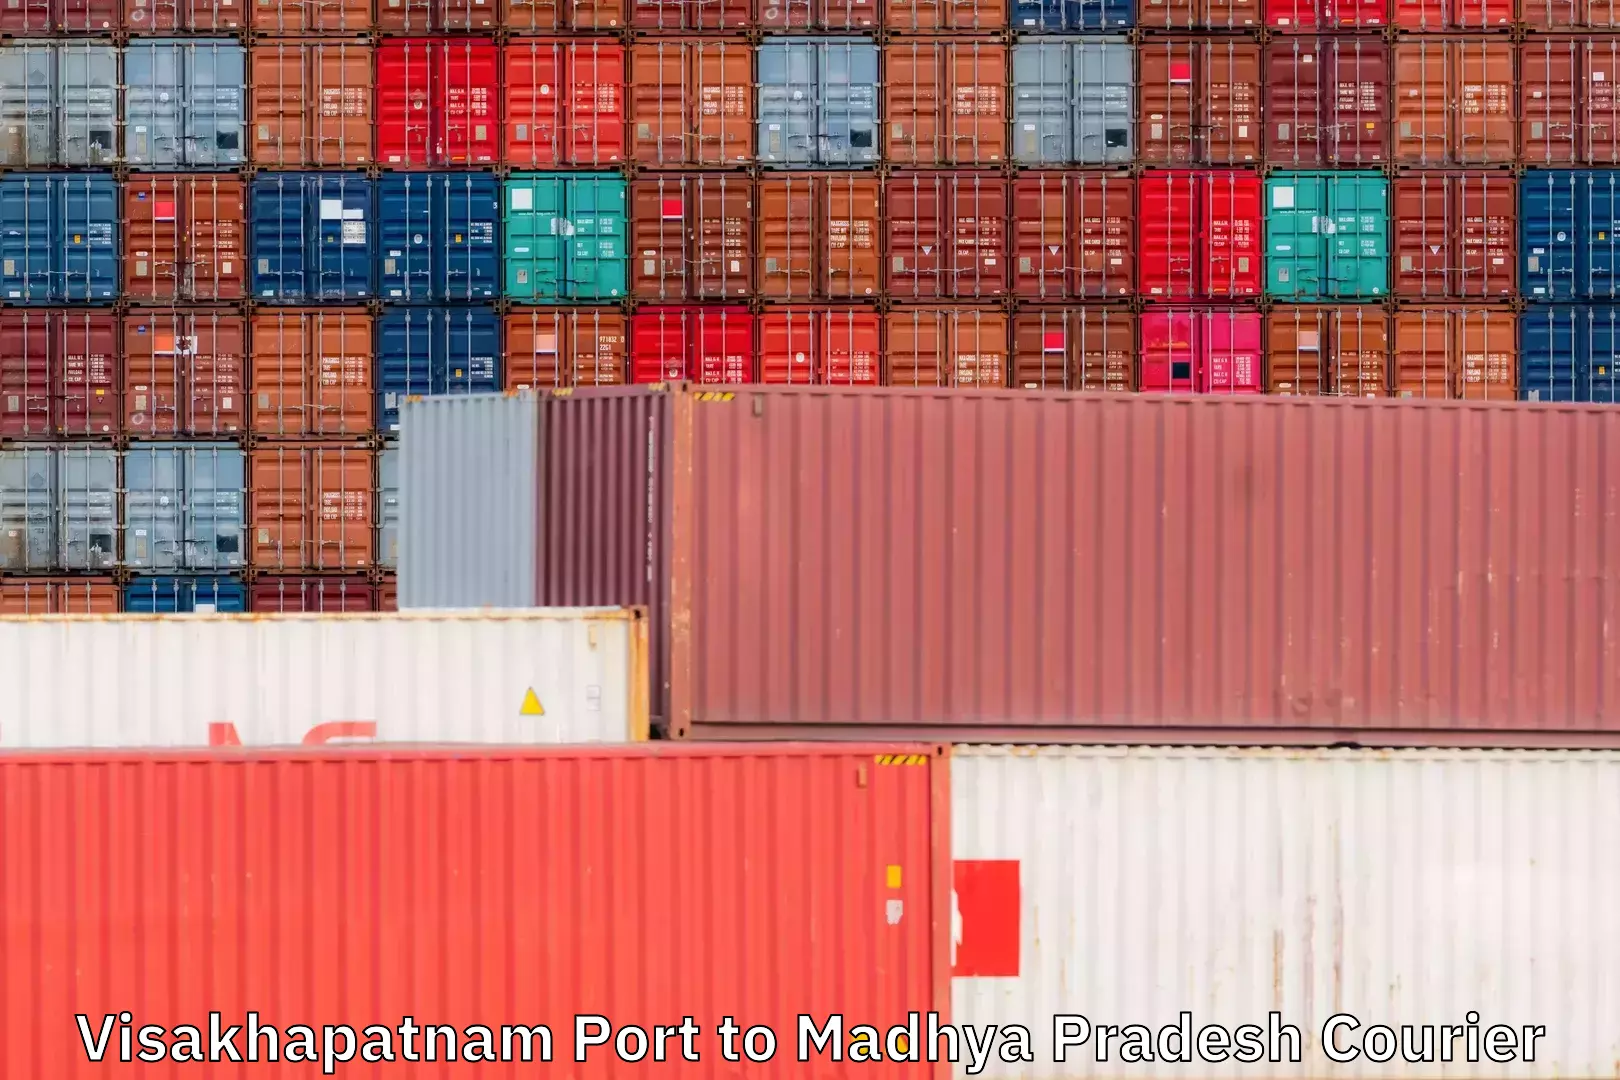 User-friendly delivery service Visakhapatnam Port to Madhya Pradesh